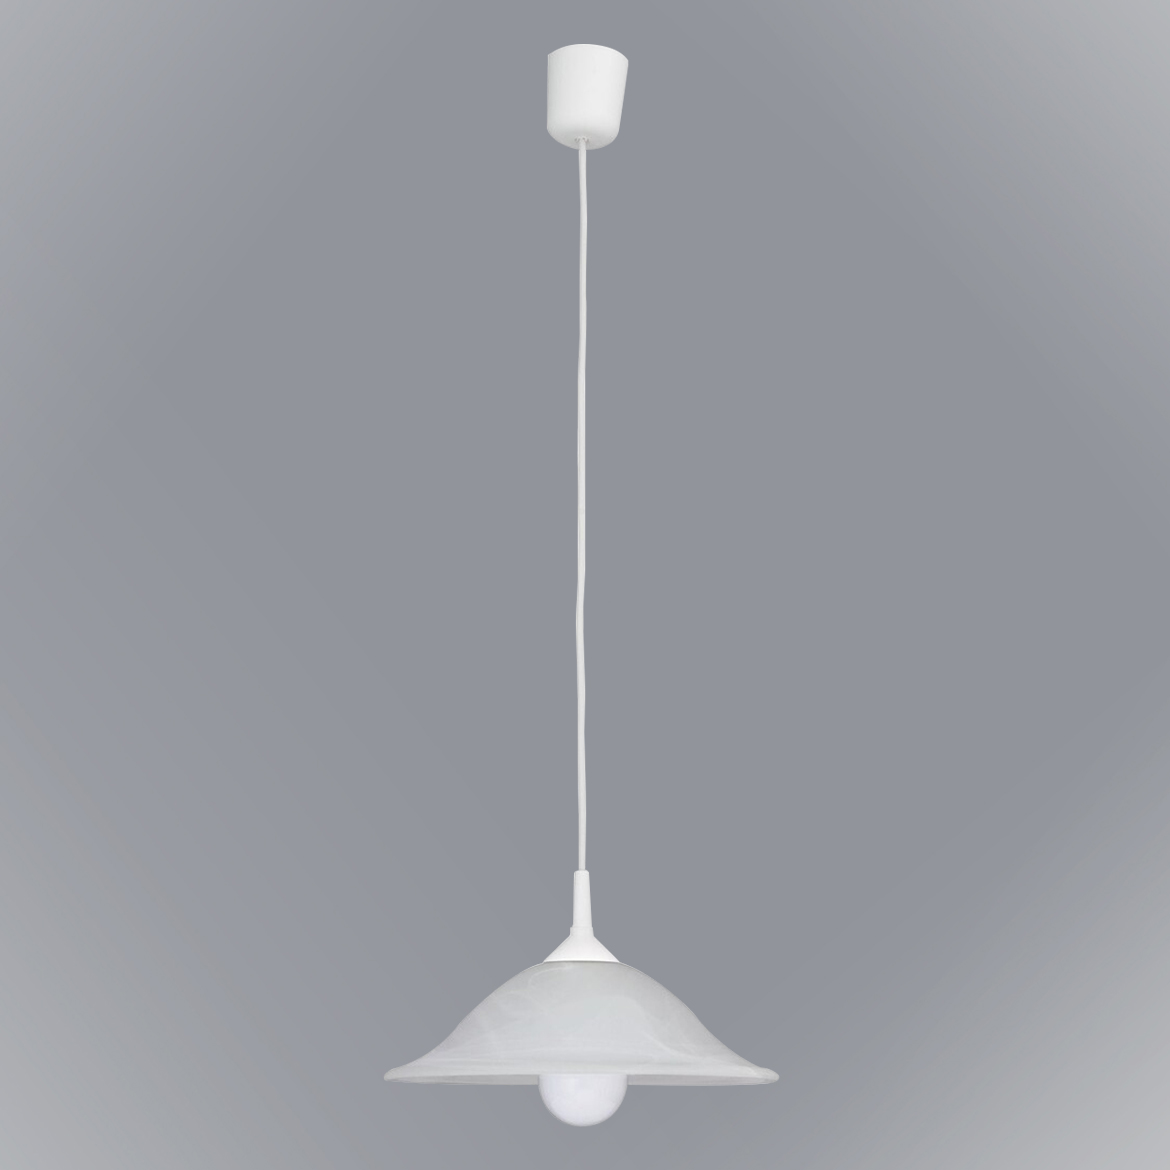 Lampe Alabastro 3905 lw1,2